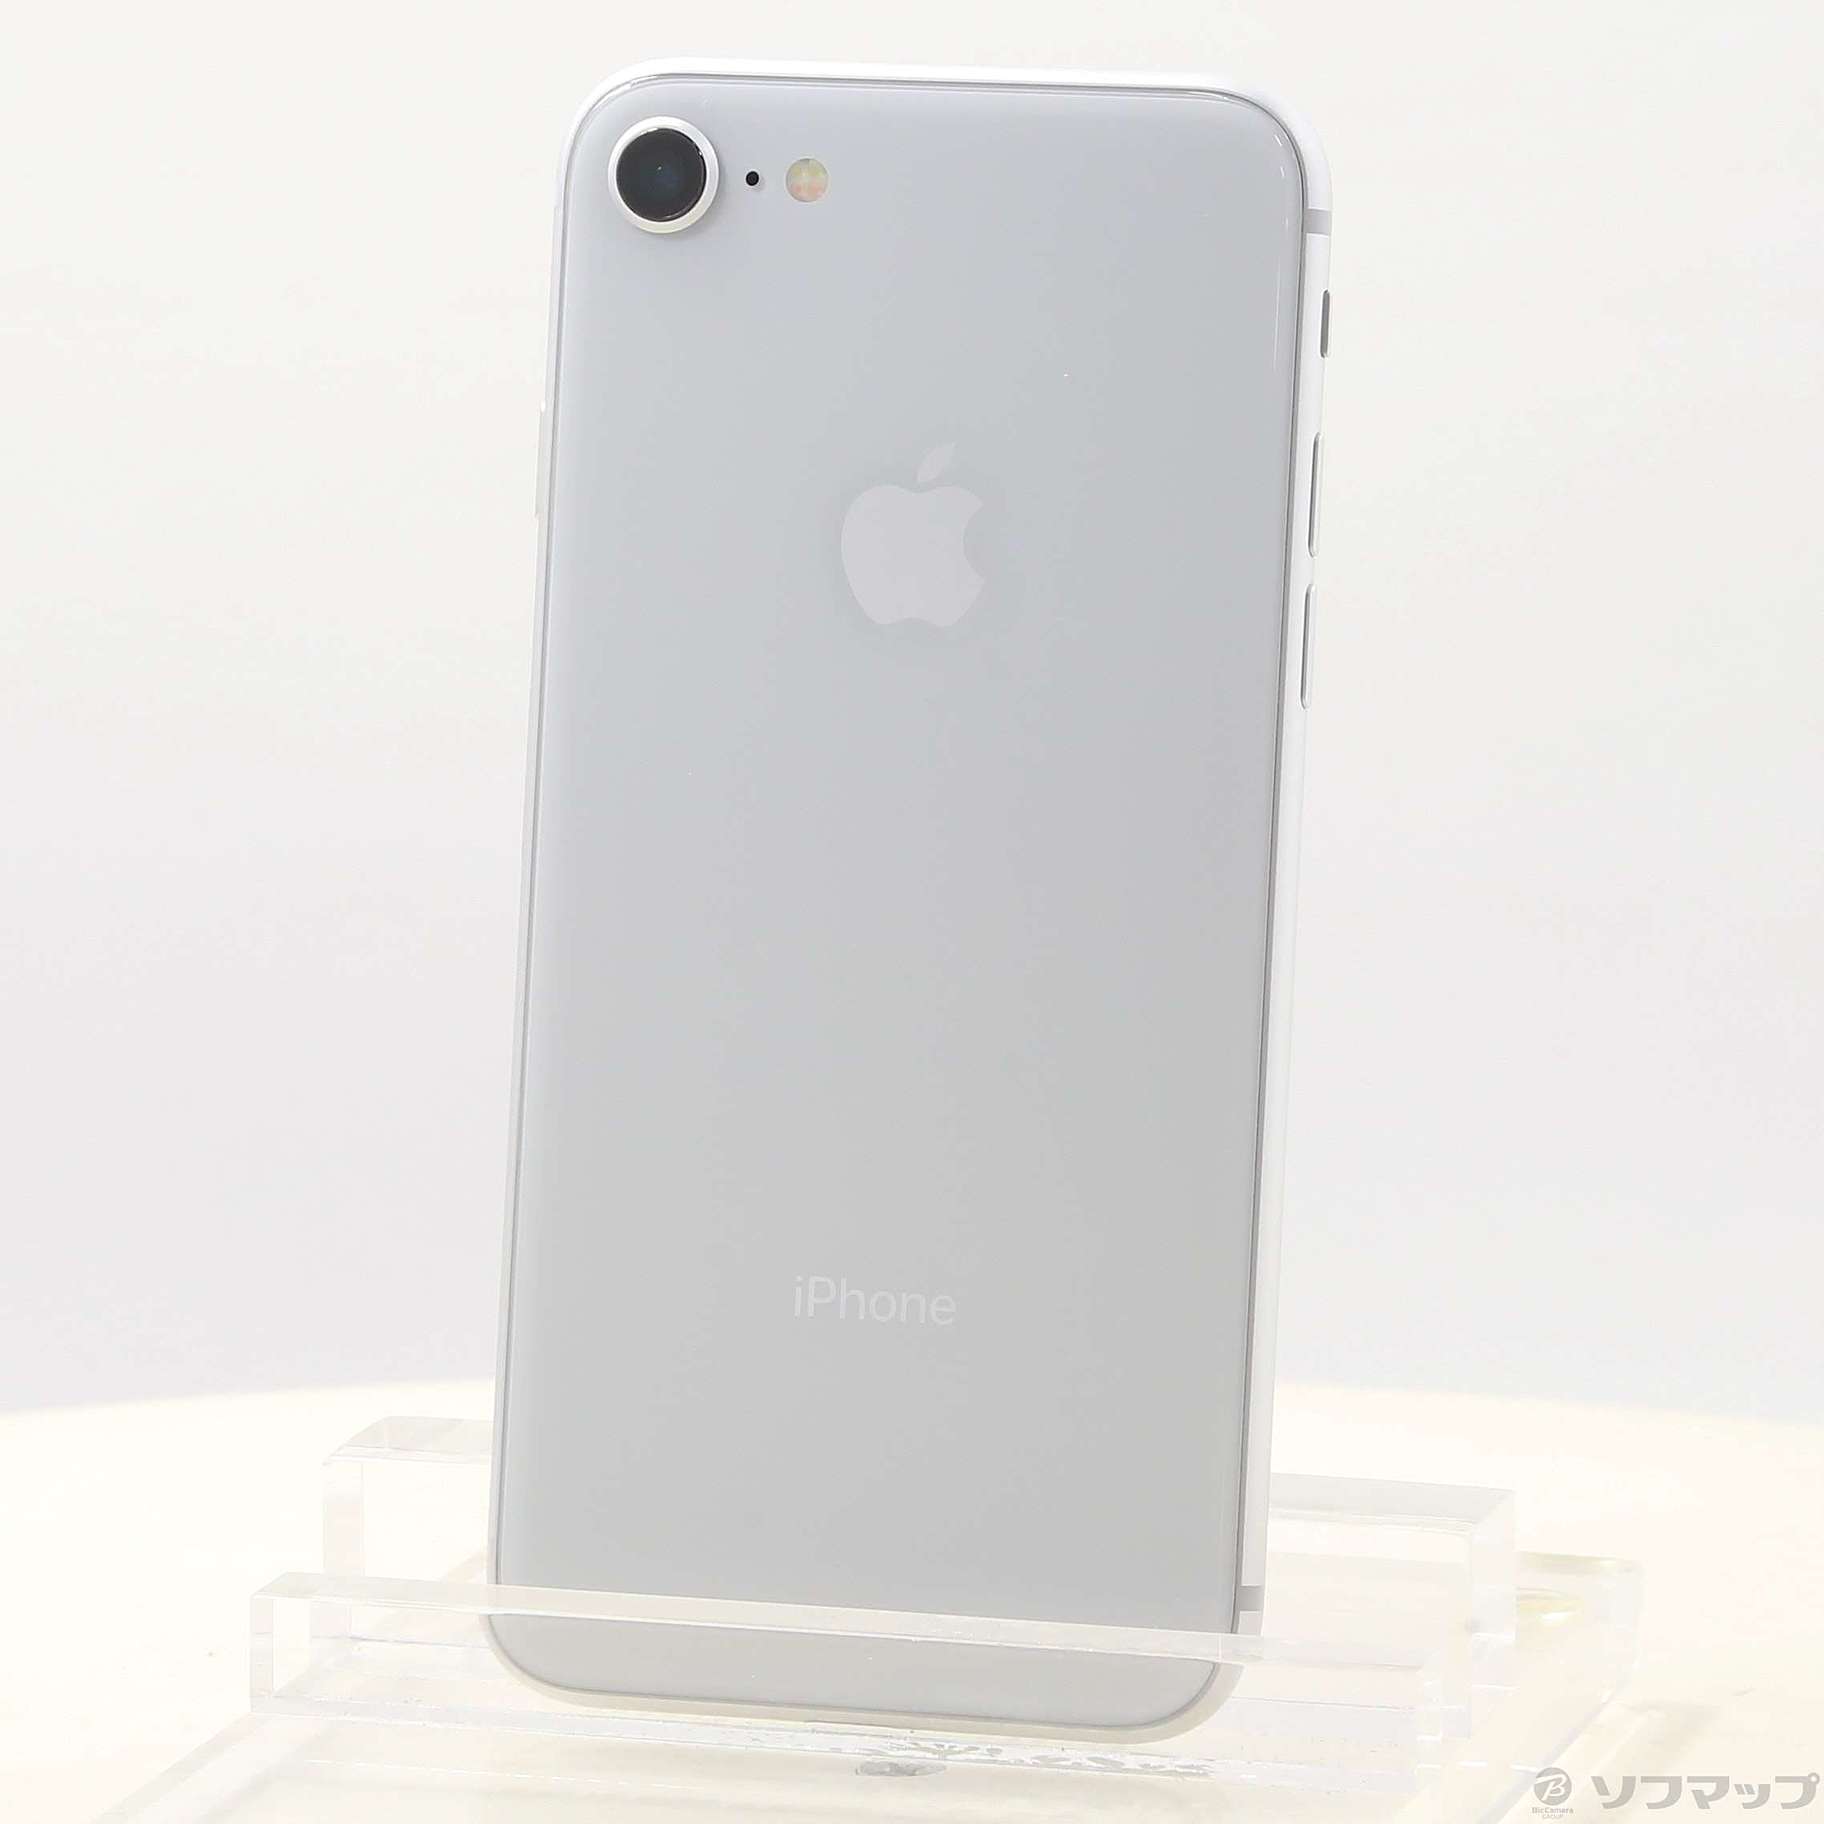 [新品SIMフリー] iPhone8 64GB シルバー(ホワイト)